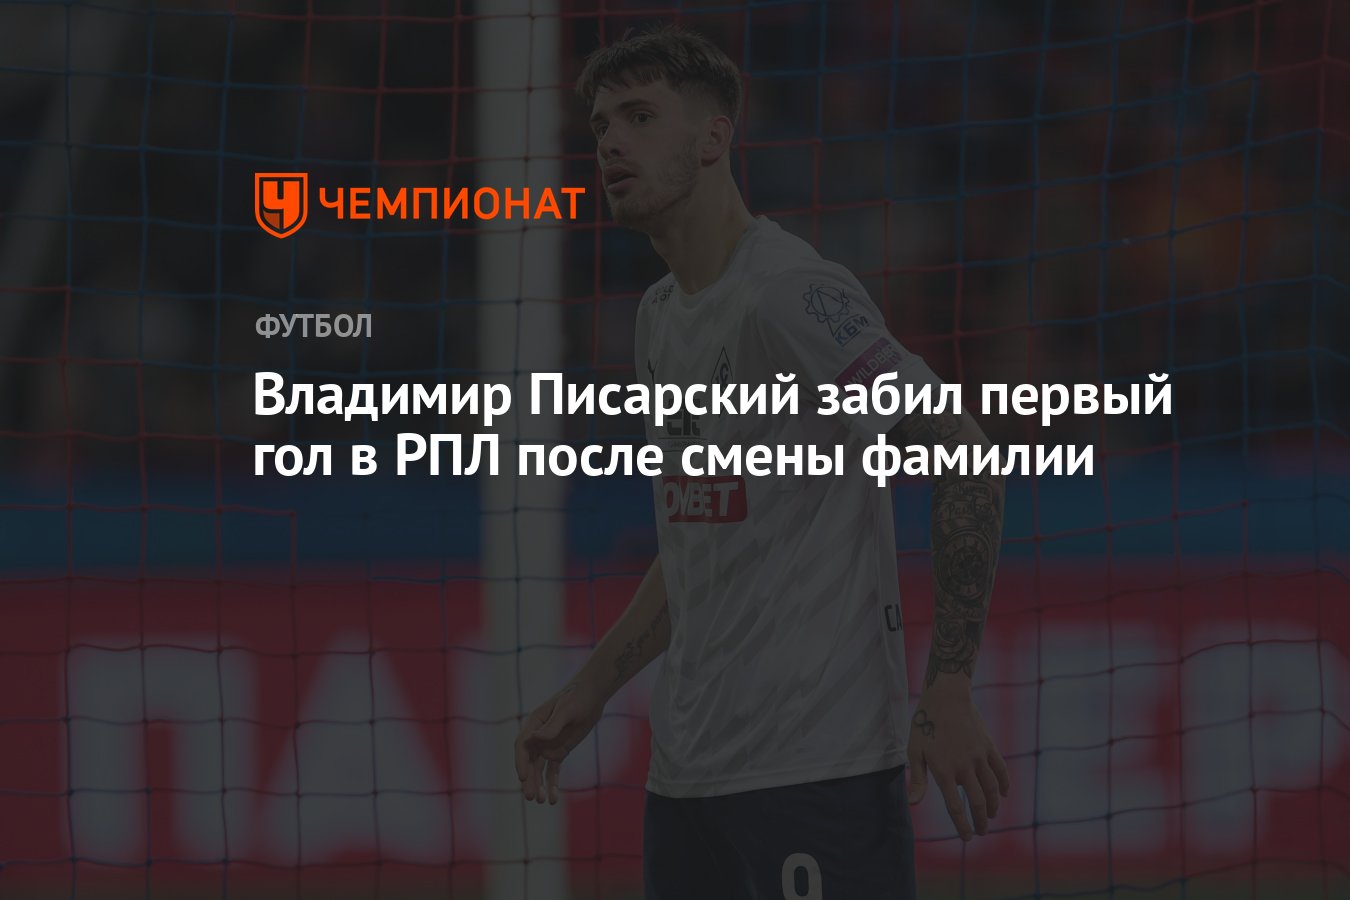 Владимир Писарский забил первый гол в РПЛ после смены фамилии - Чемпионат